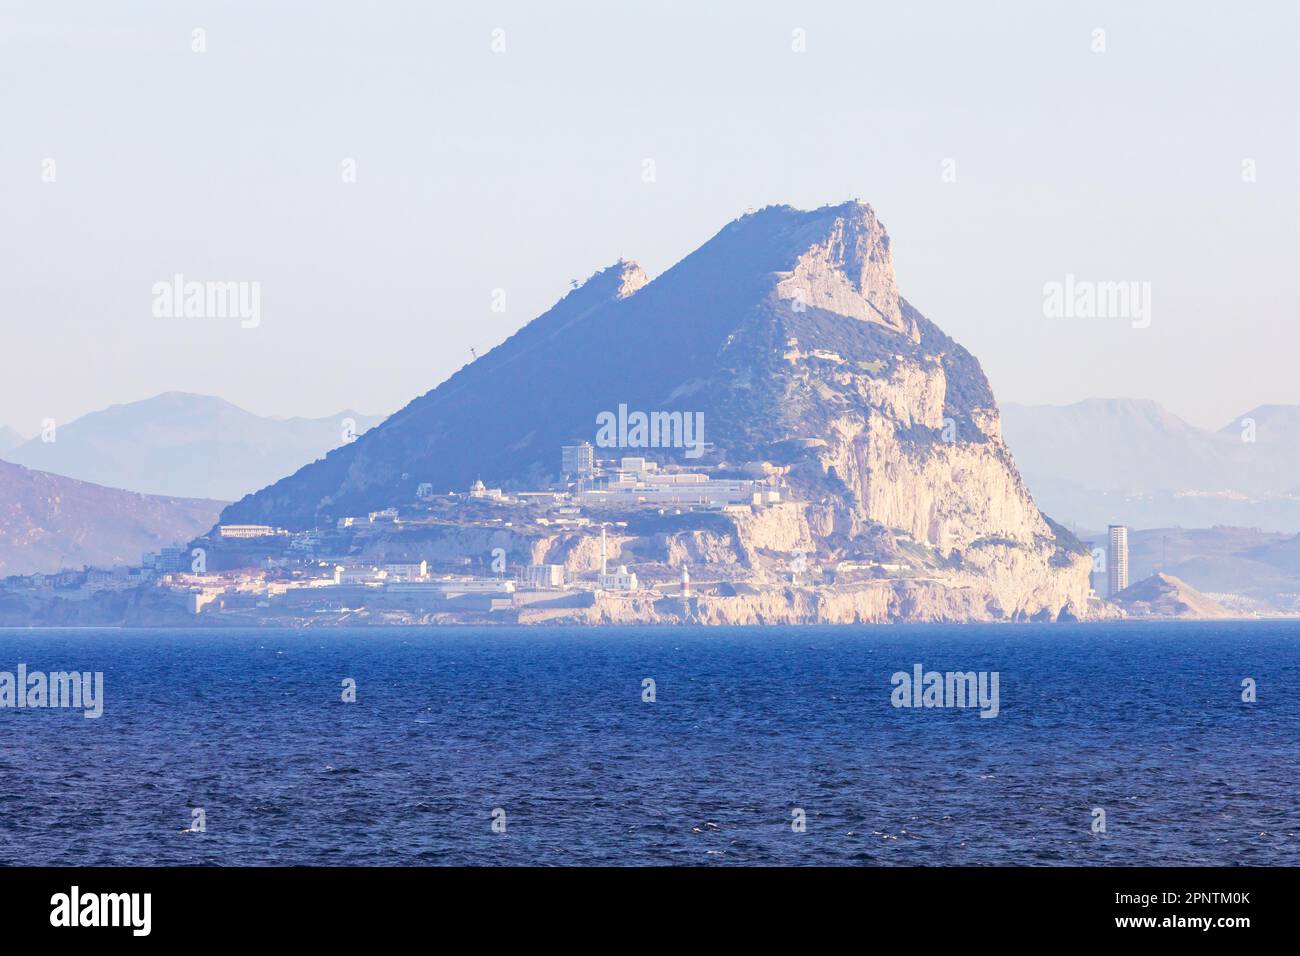 Das britische Überseegebiet Gibraltar, der Felsen von Gibraltar auf der iberischen Halbinsel. Vom Meer aus gesehen. Annäherung. Stockfoto